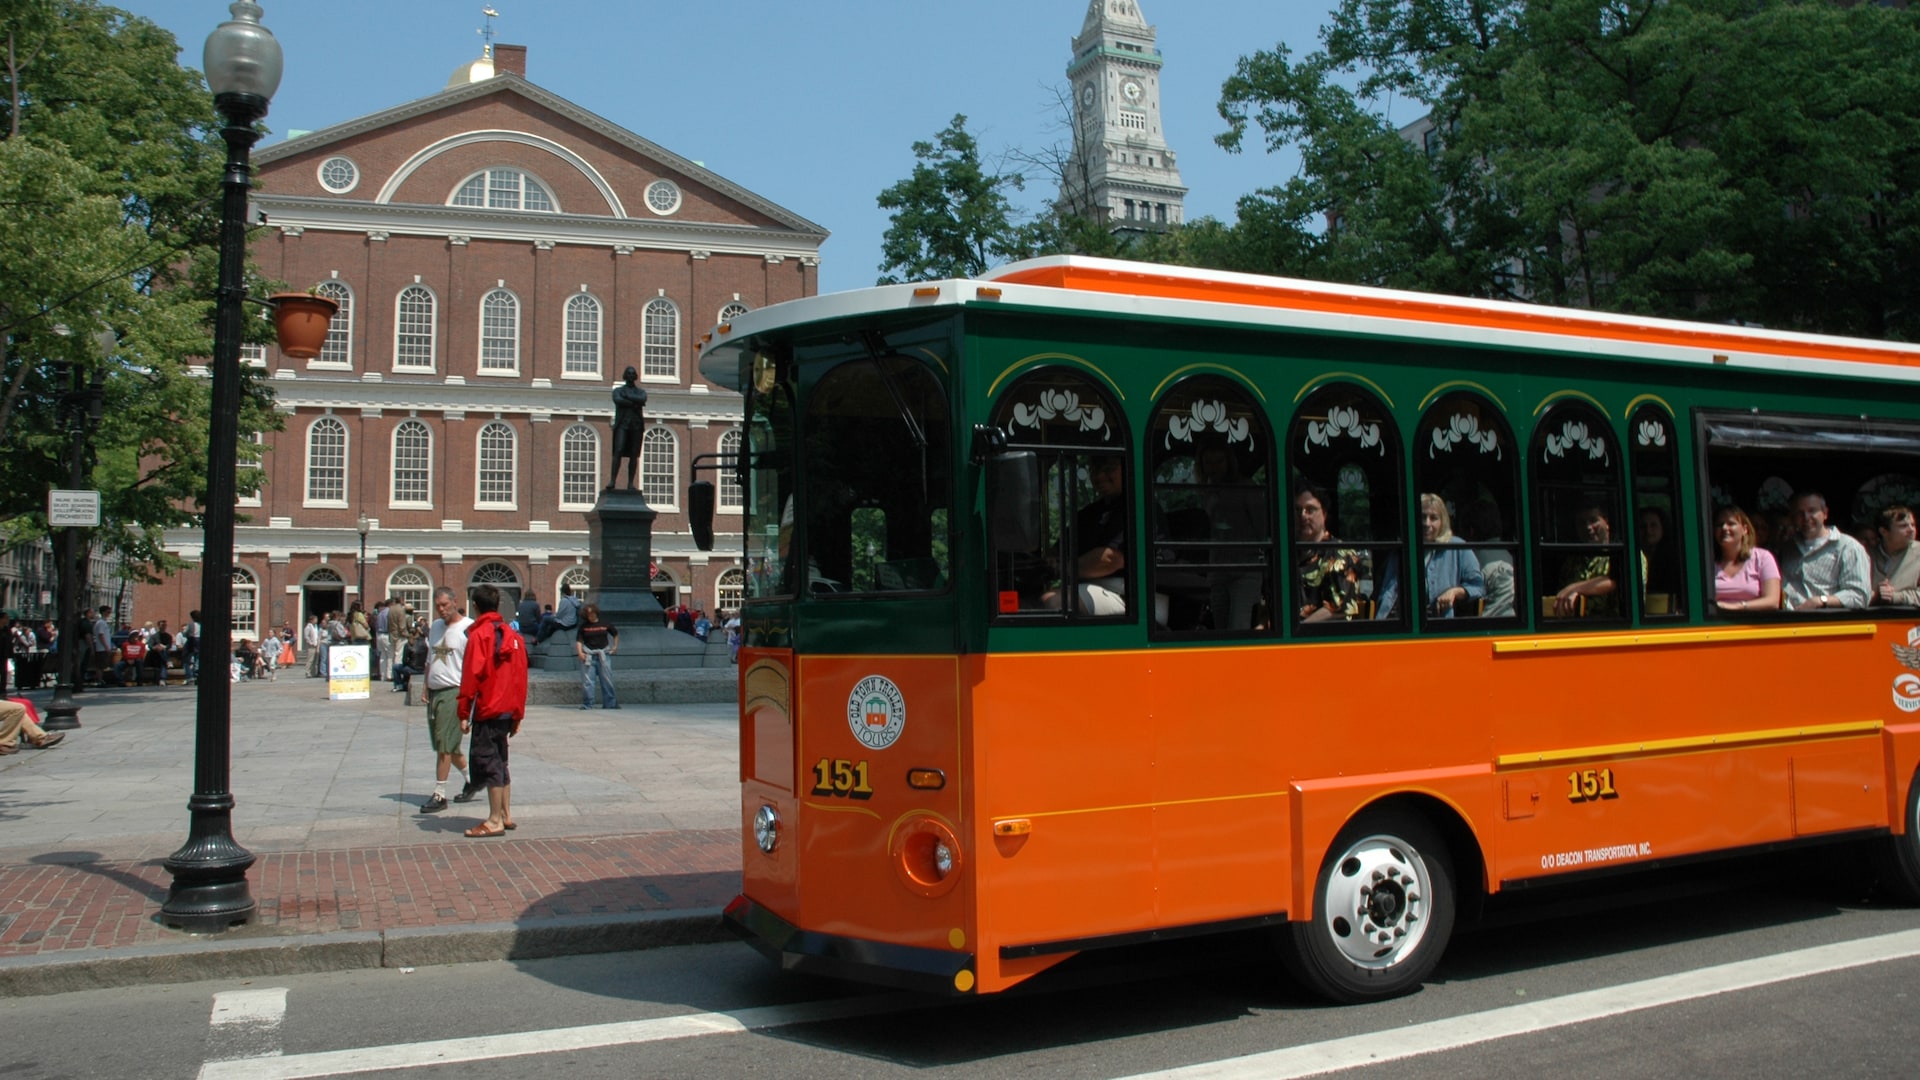 Old Town Trolley Tour of Boston Disney Cruise Line